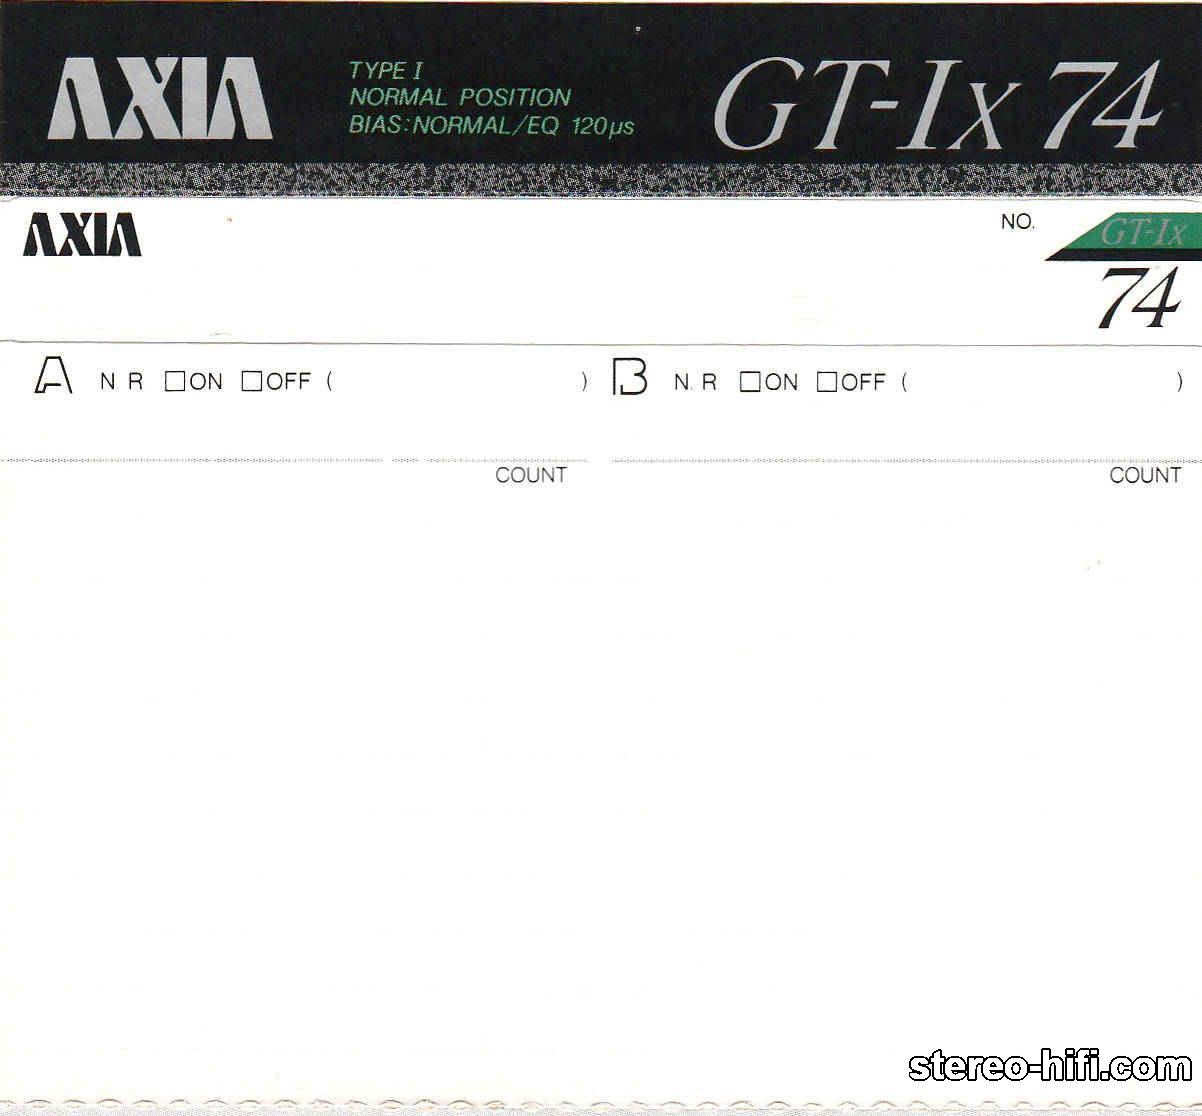 AXIA GT-Ix C74 - 1989